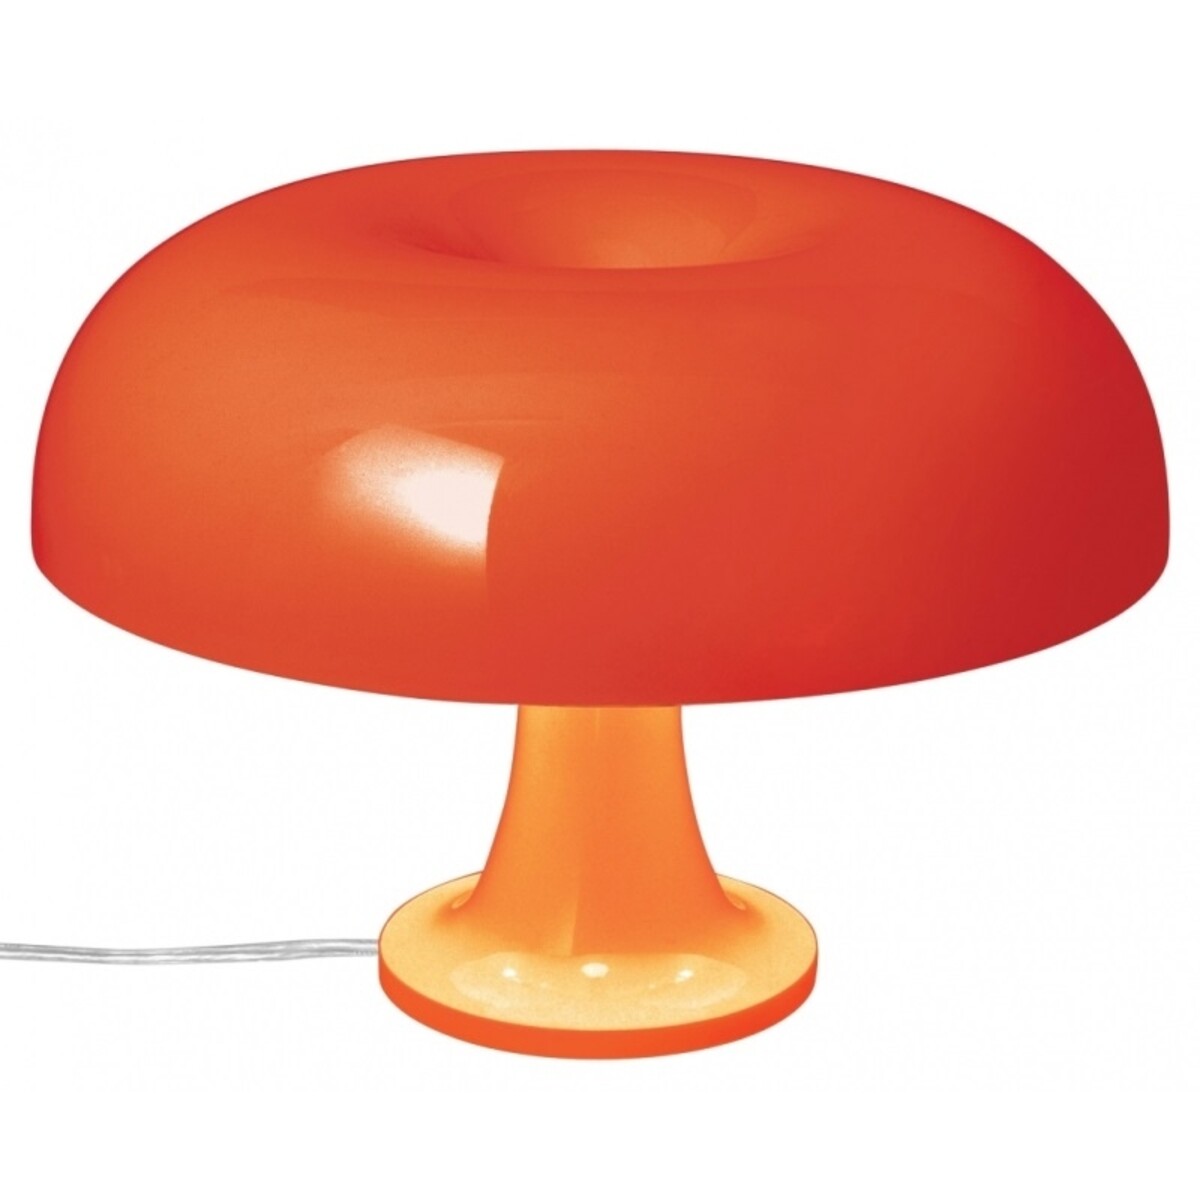 Artemide designové stolní lampy Nessino, oranžová.